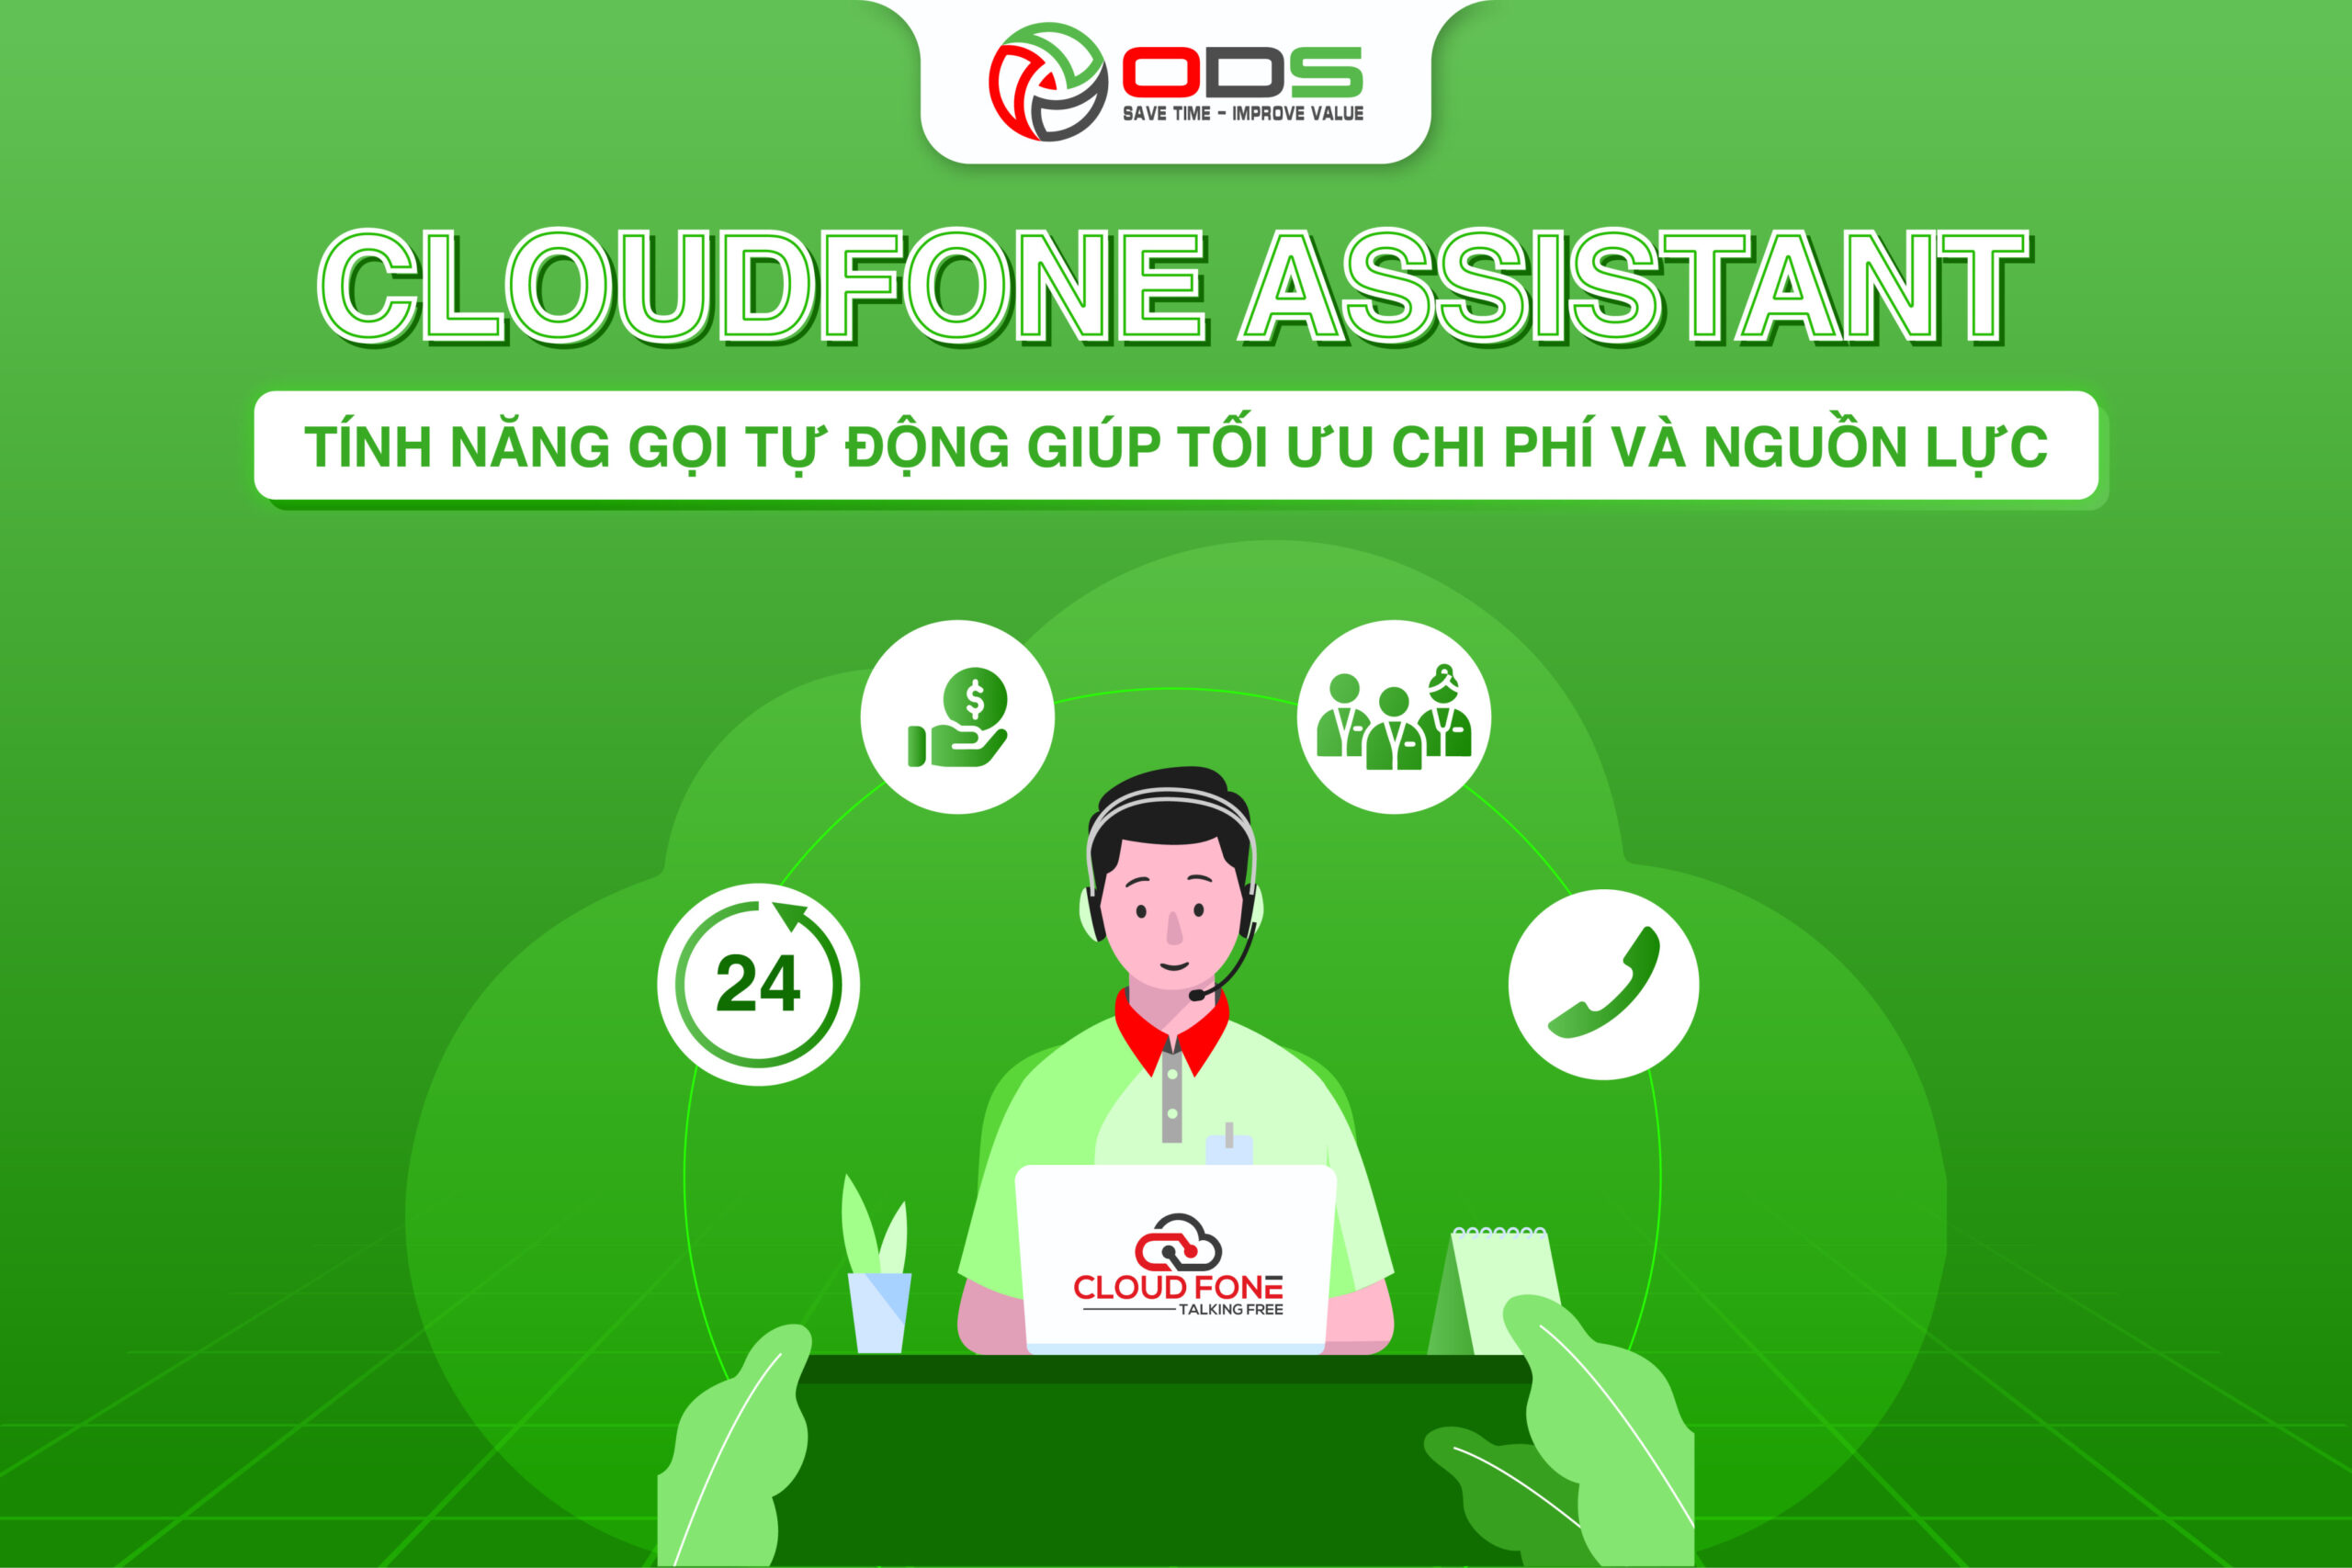 CloudFone Assistant giúp doanh nghiệp tối ưu chi phí và nguồn lực